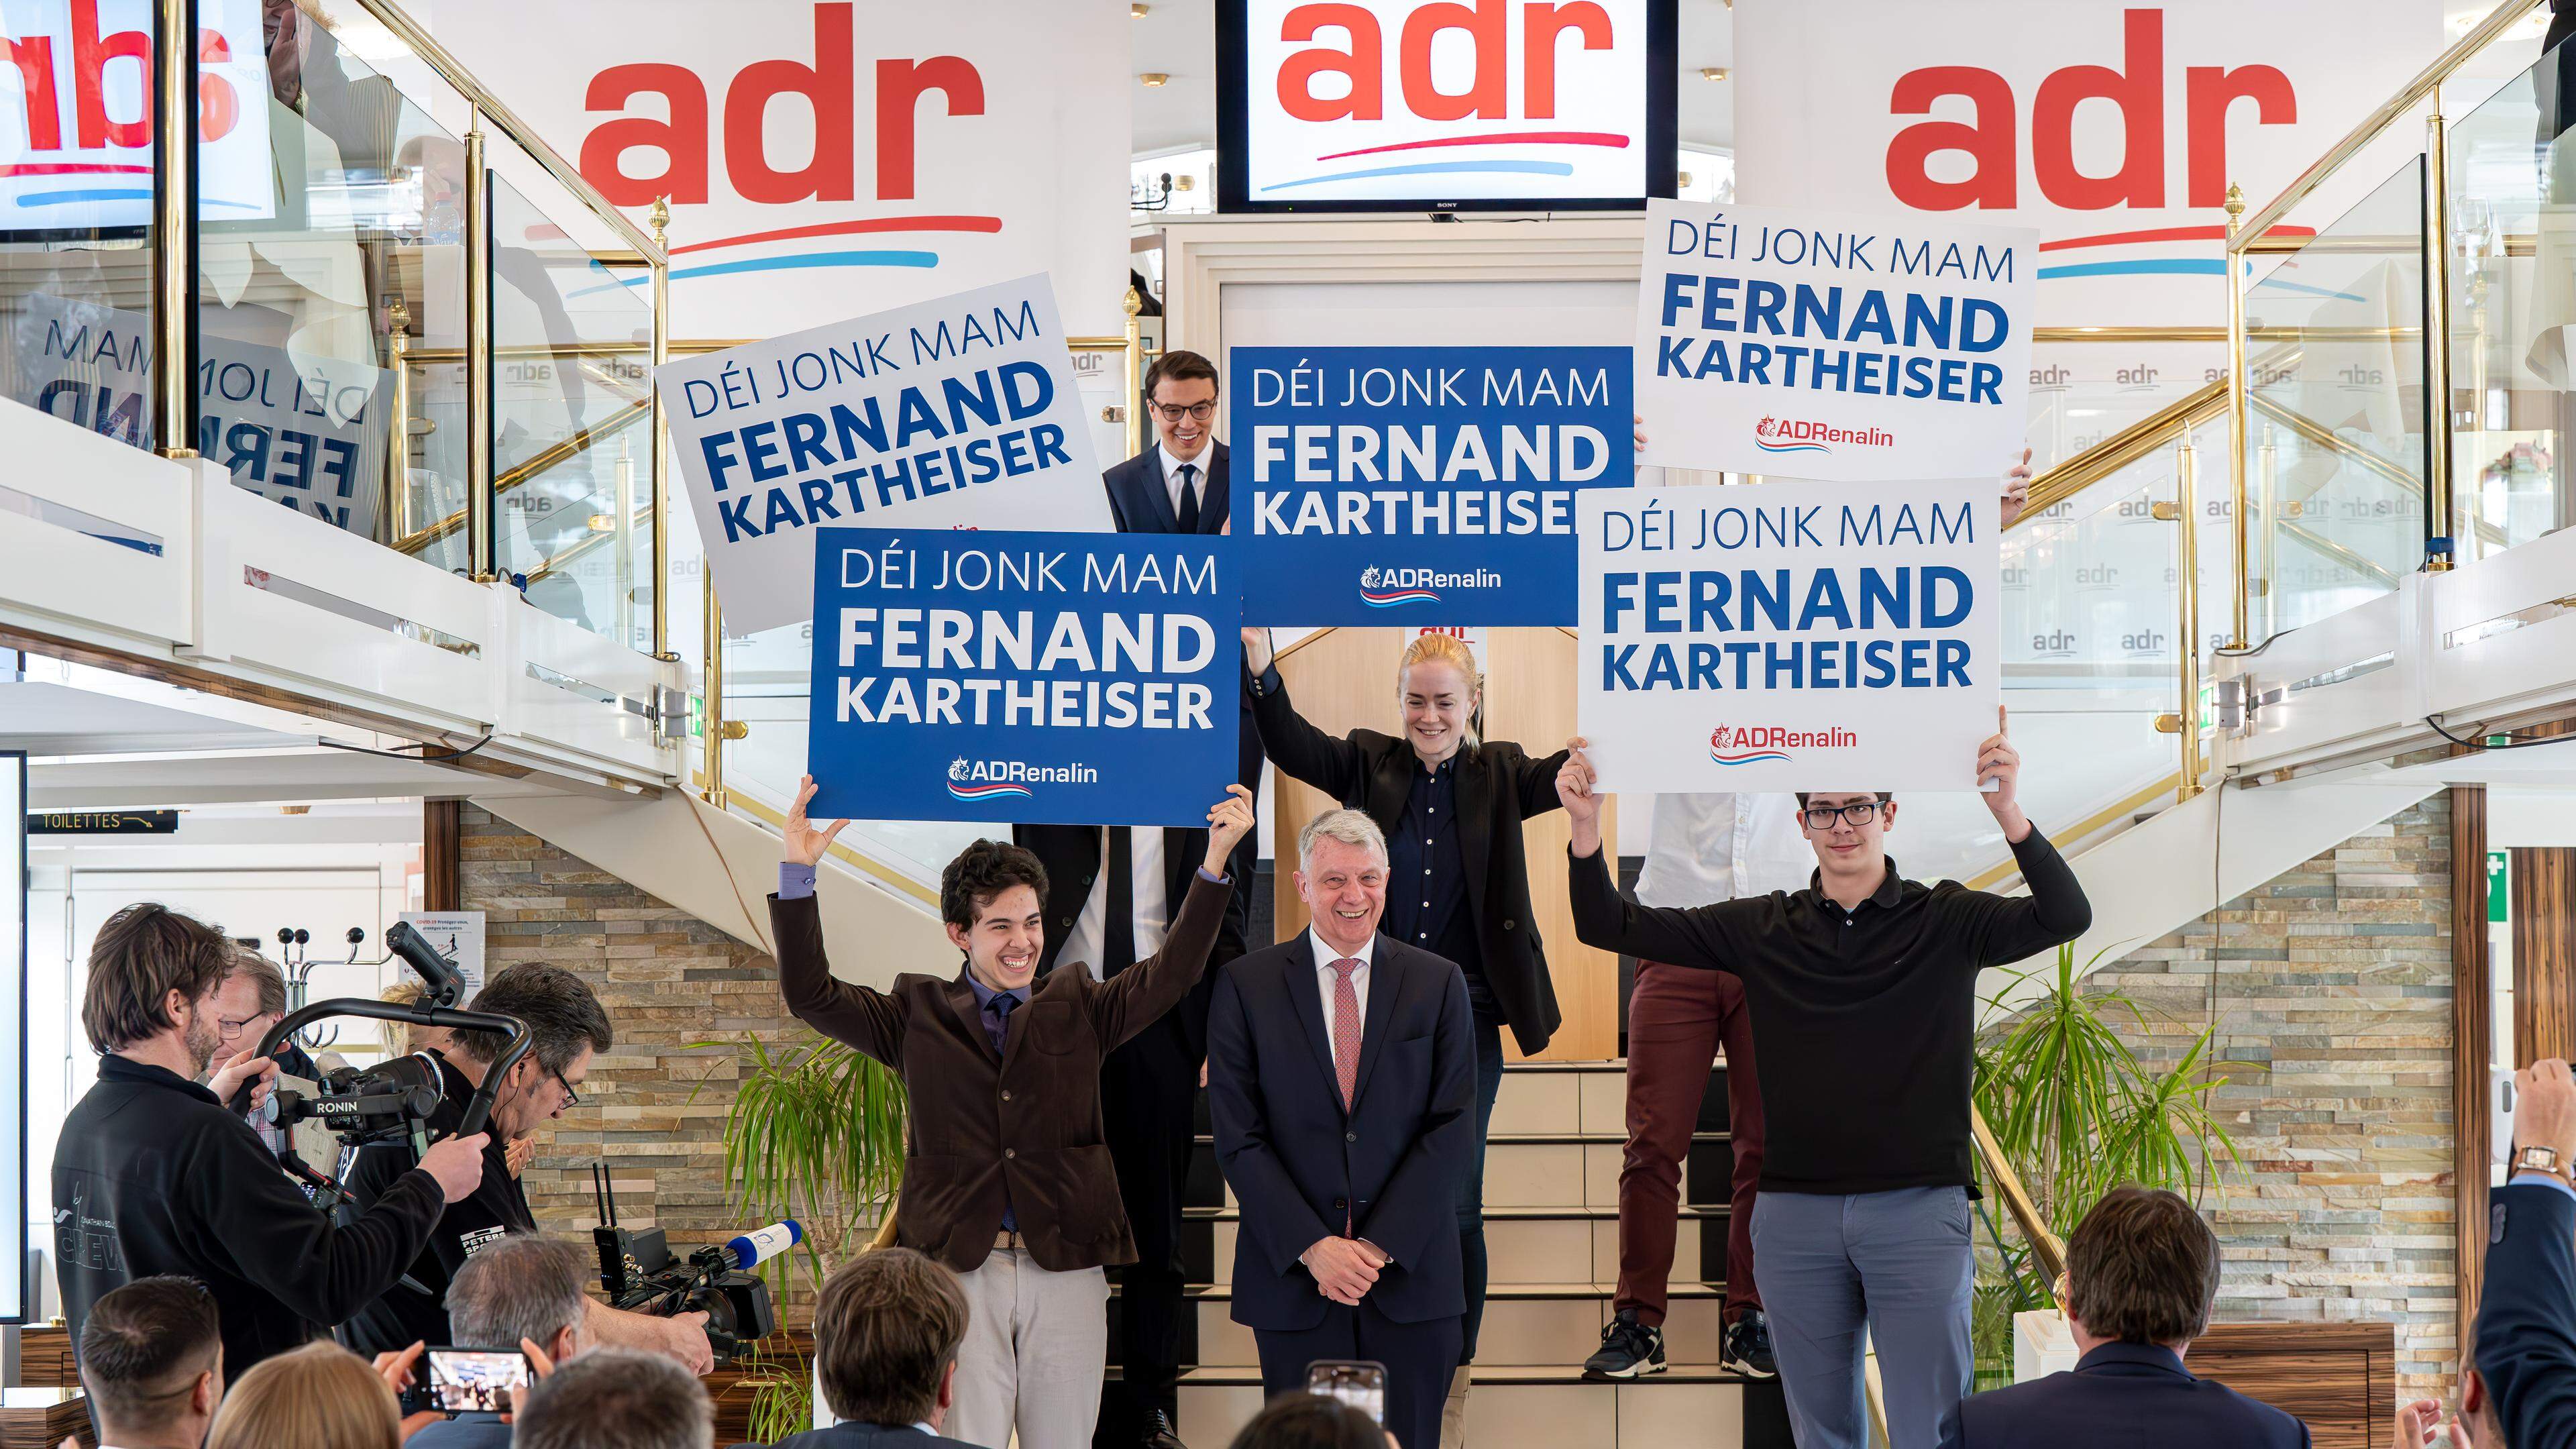 Im Gegensatz zur AfD gelingt es der ADR um Spitzenkandidat Fernand Kartheiser nicht, aus der Unzufriedenheit der Generation Z Kapital zu schlagen.  